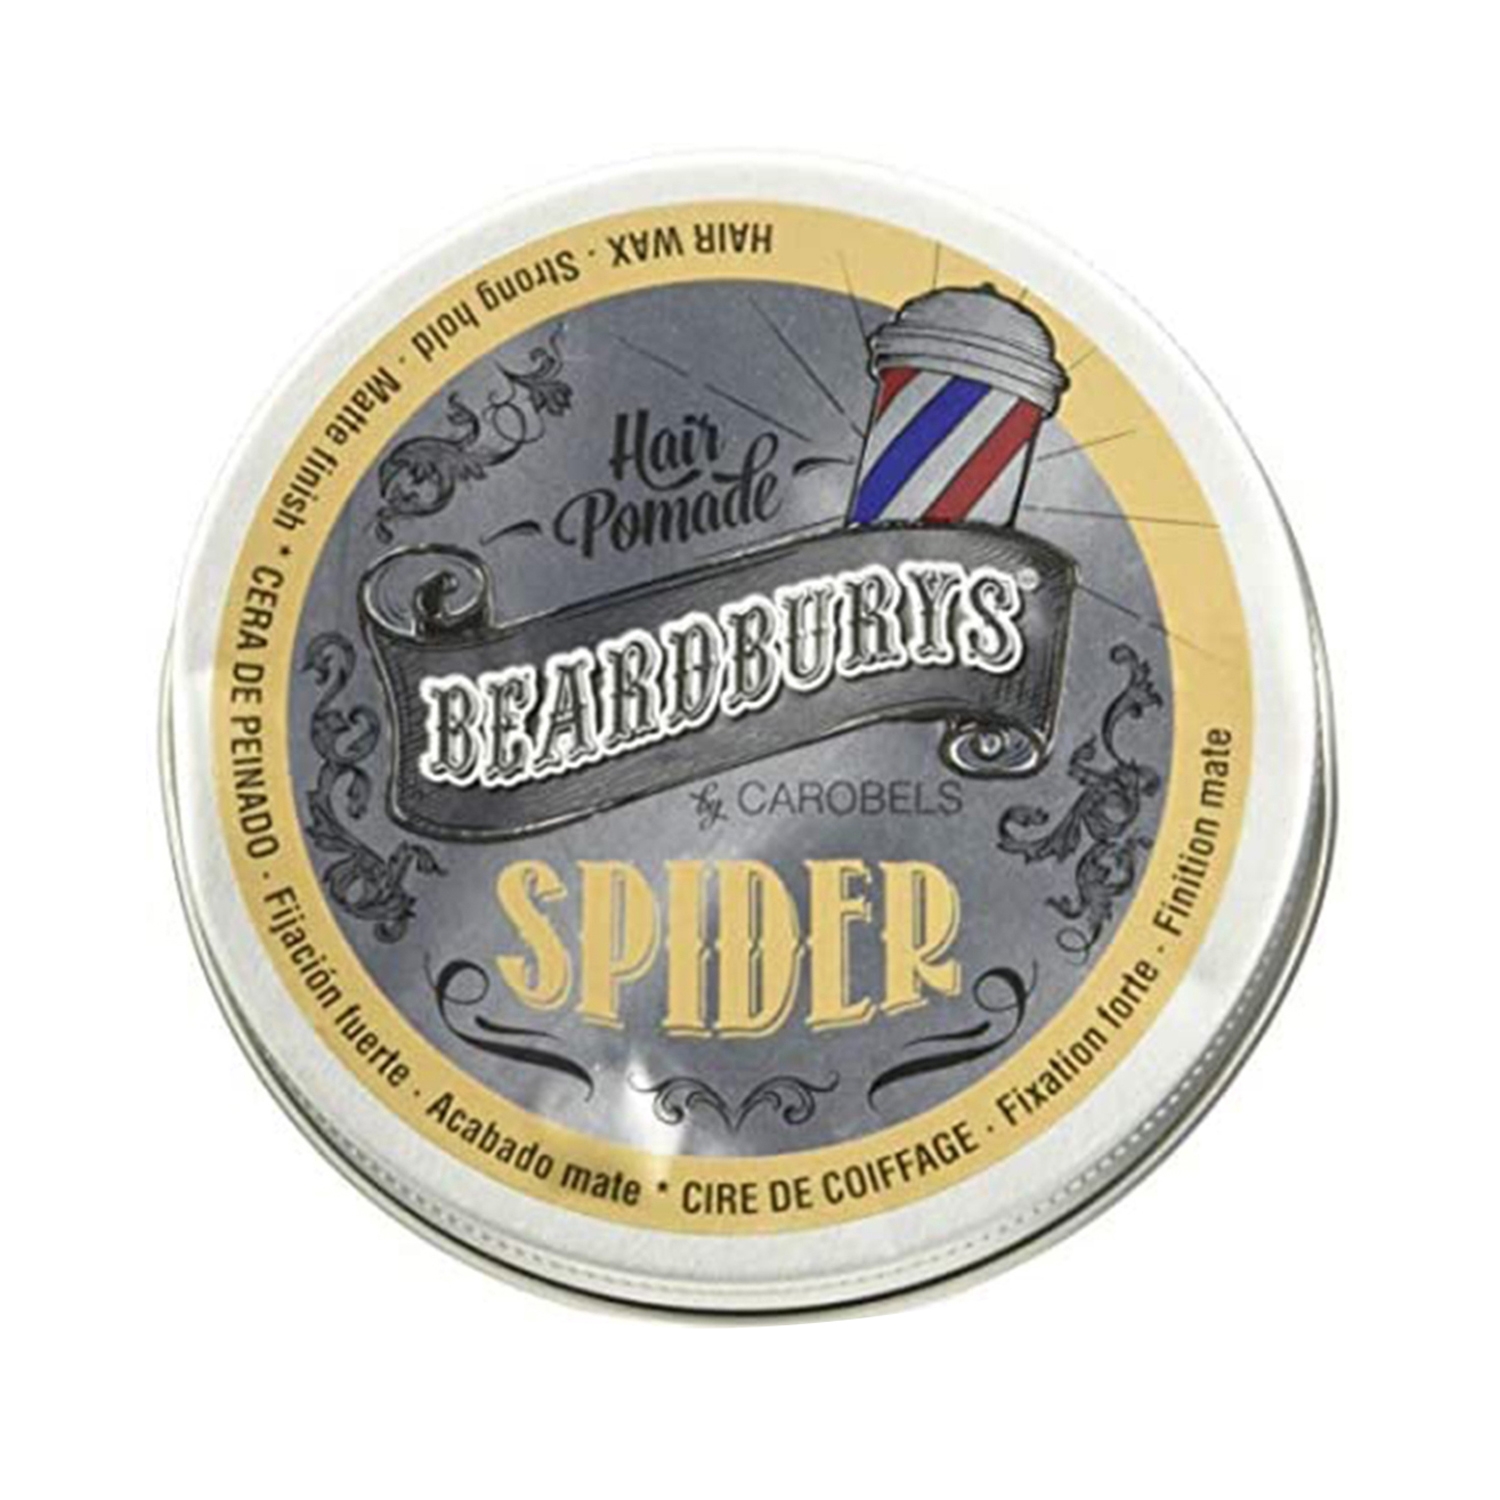 Beardburys | Beardburys Spider Hair Pomade (100ml)